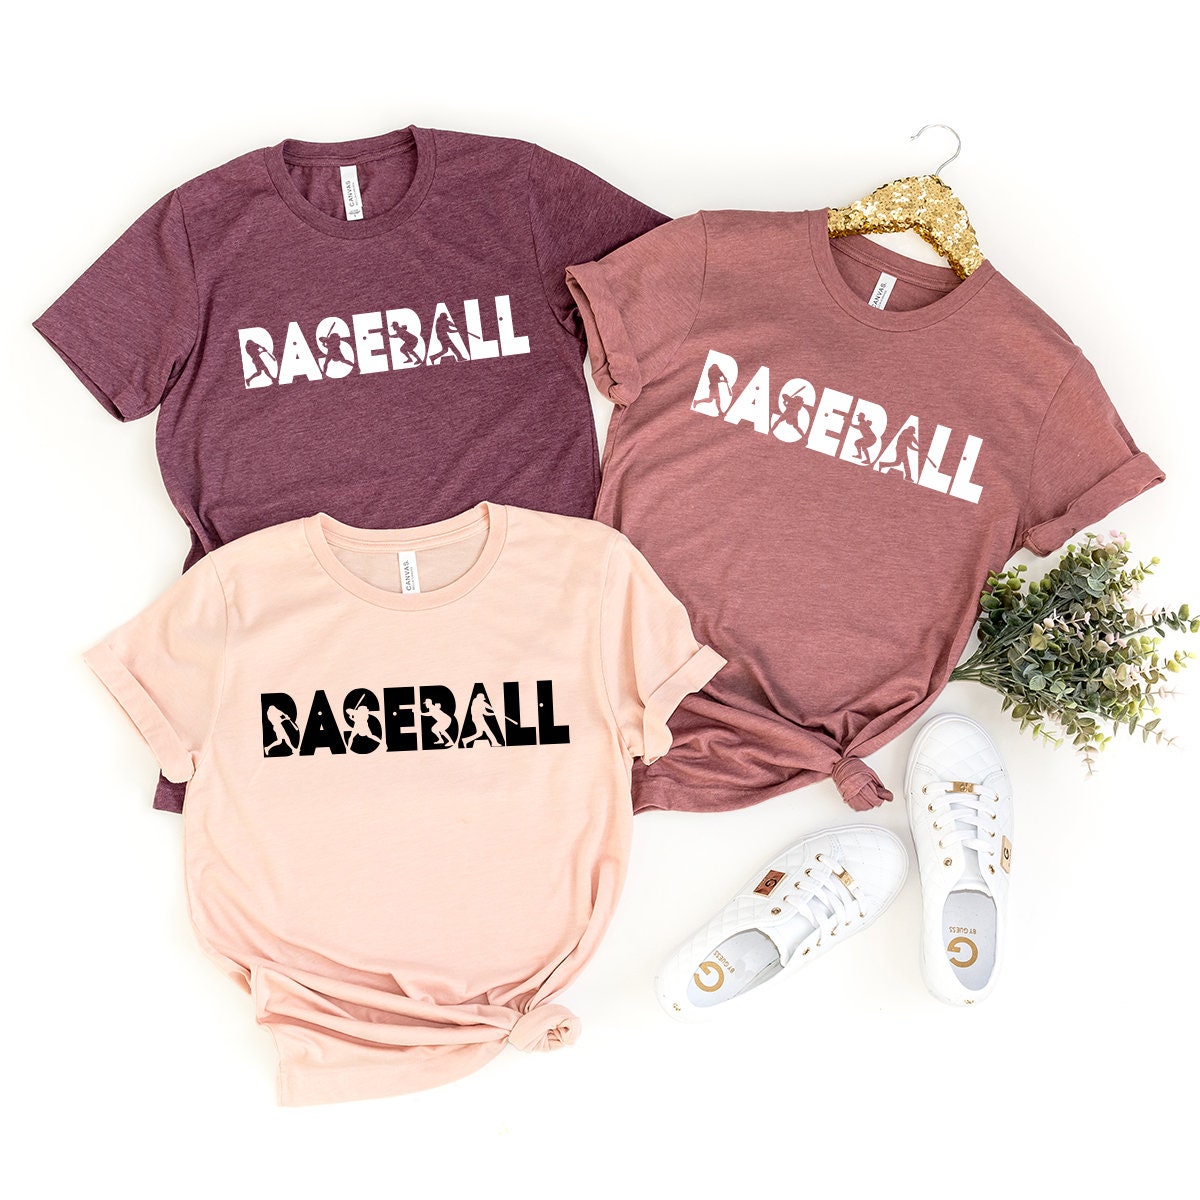 Baseball Player Shirt, Baseball Shirt, Baseball Lover Gift, Baseball Fan Tee, Baseball Life Shirt, Baseball Tee, Baseball Gifts - Fastdeliverytees.com